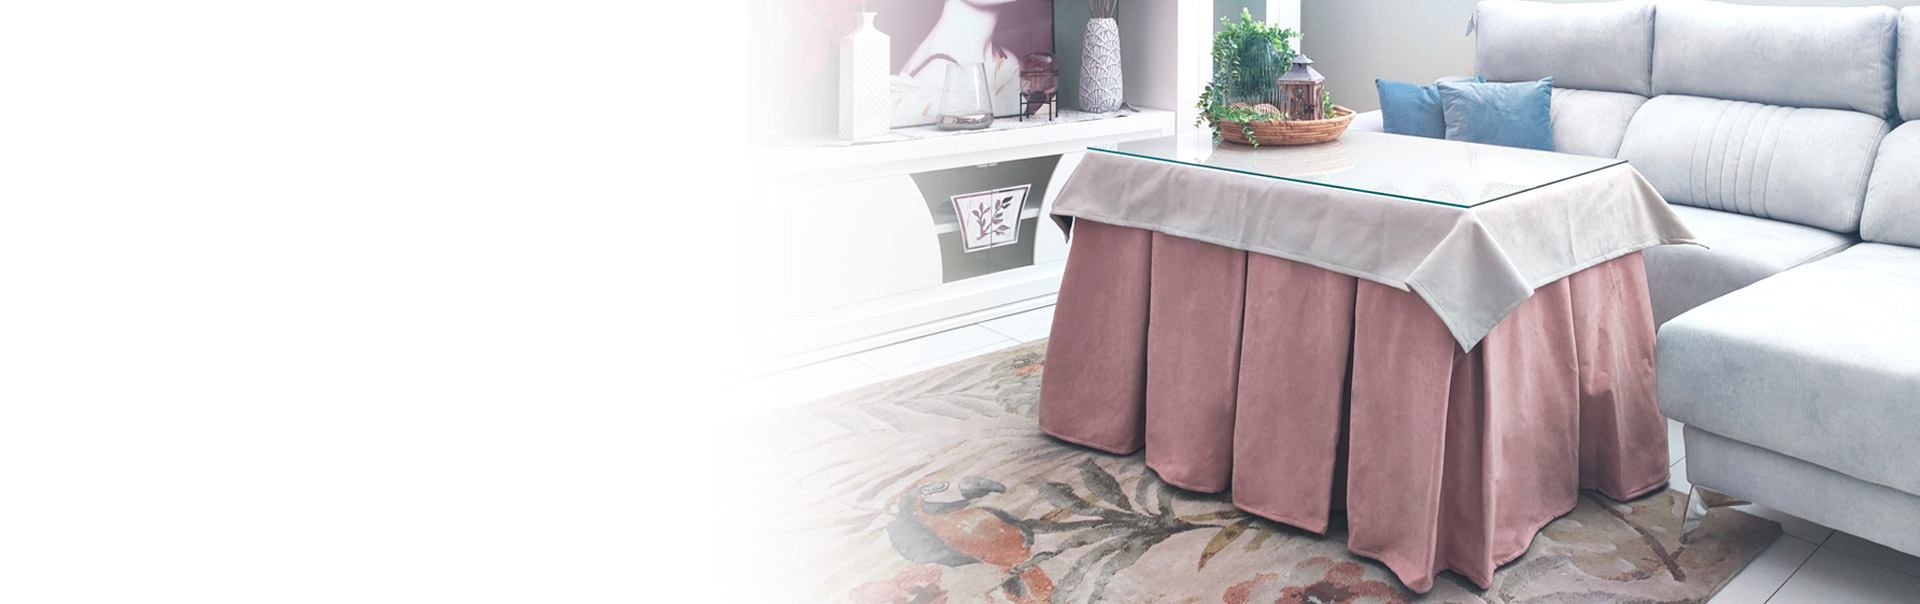 Mesa con falda: Catálogo de Mesas Camillas Completas